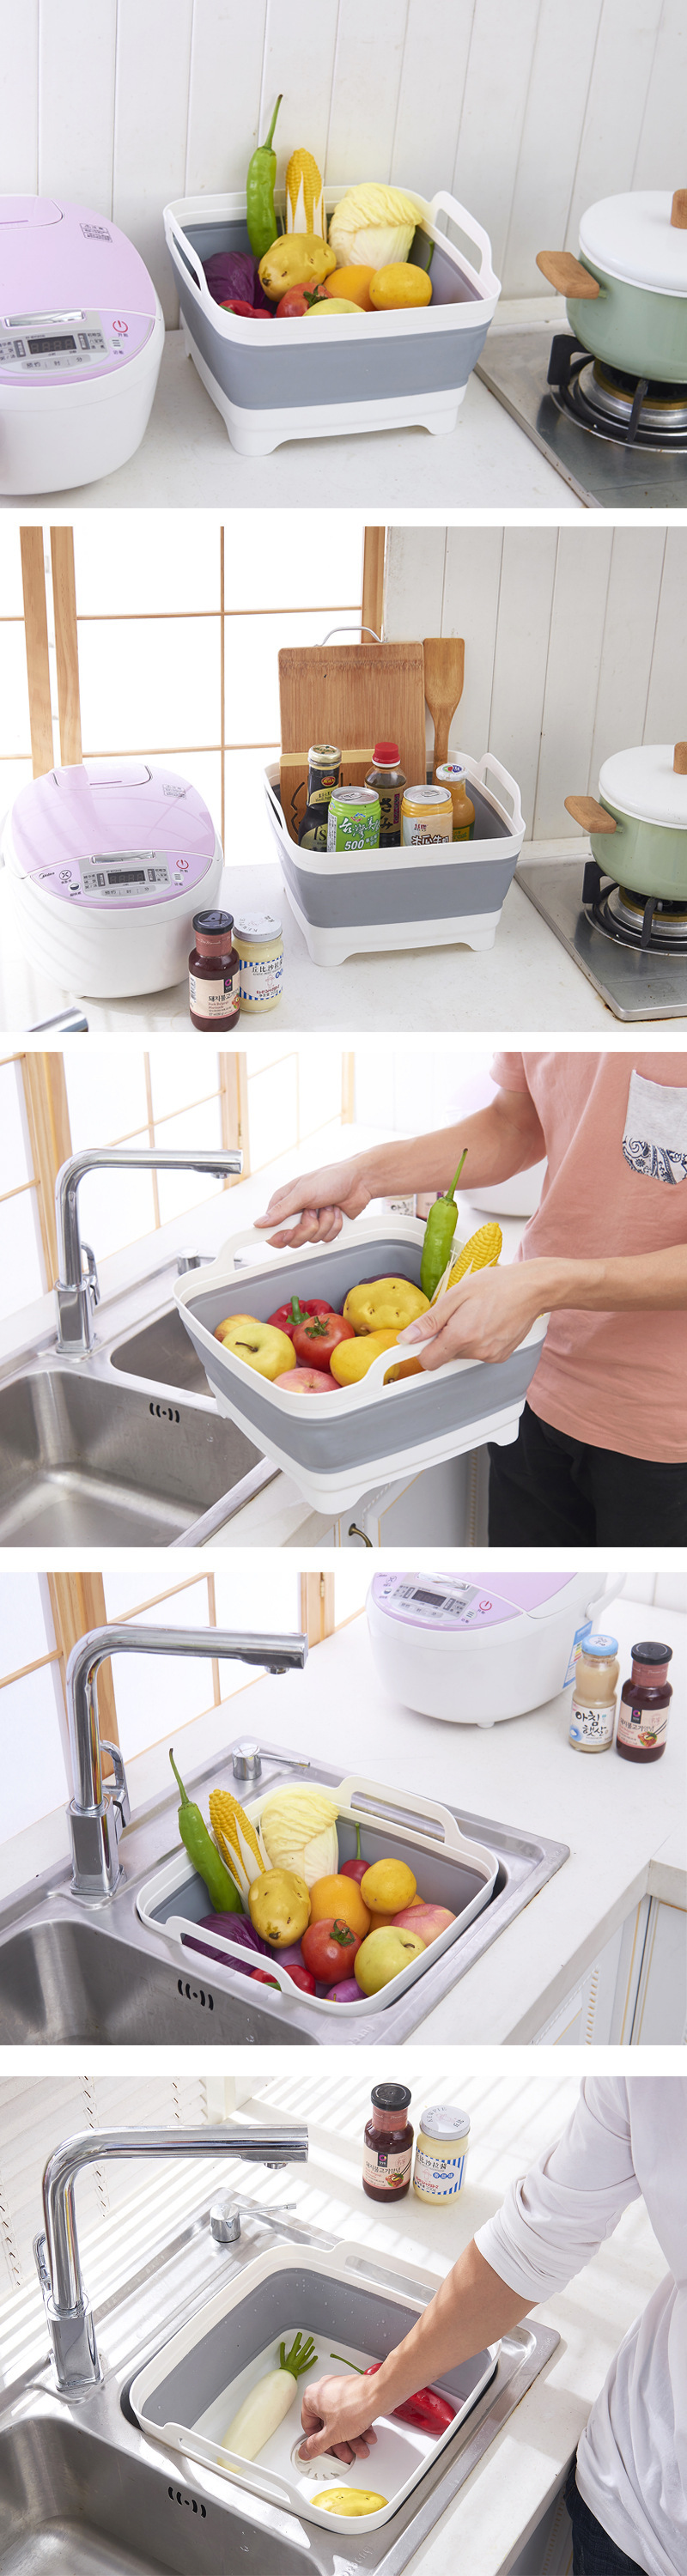 創意可折疊廚房洗菜籃 蔬菜水果瀝水籃 摺疊收納不占空間